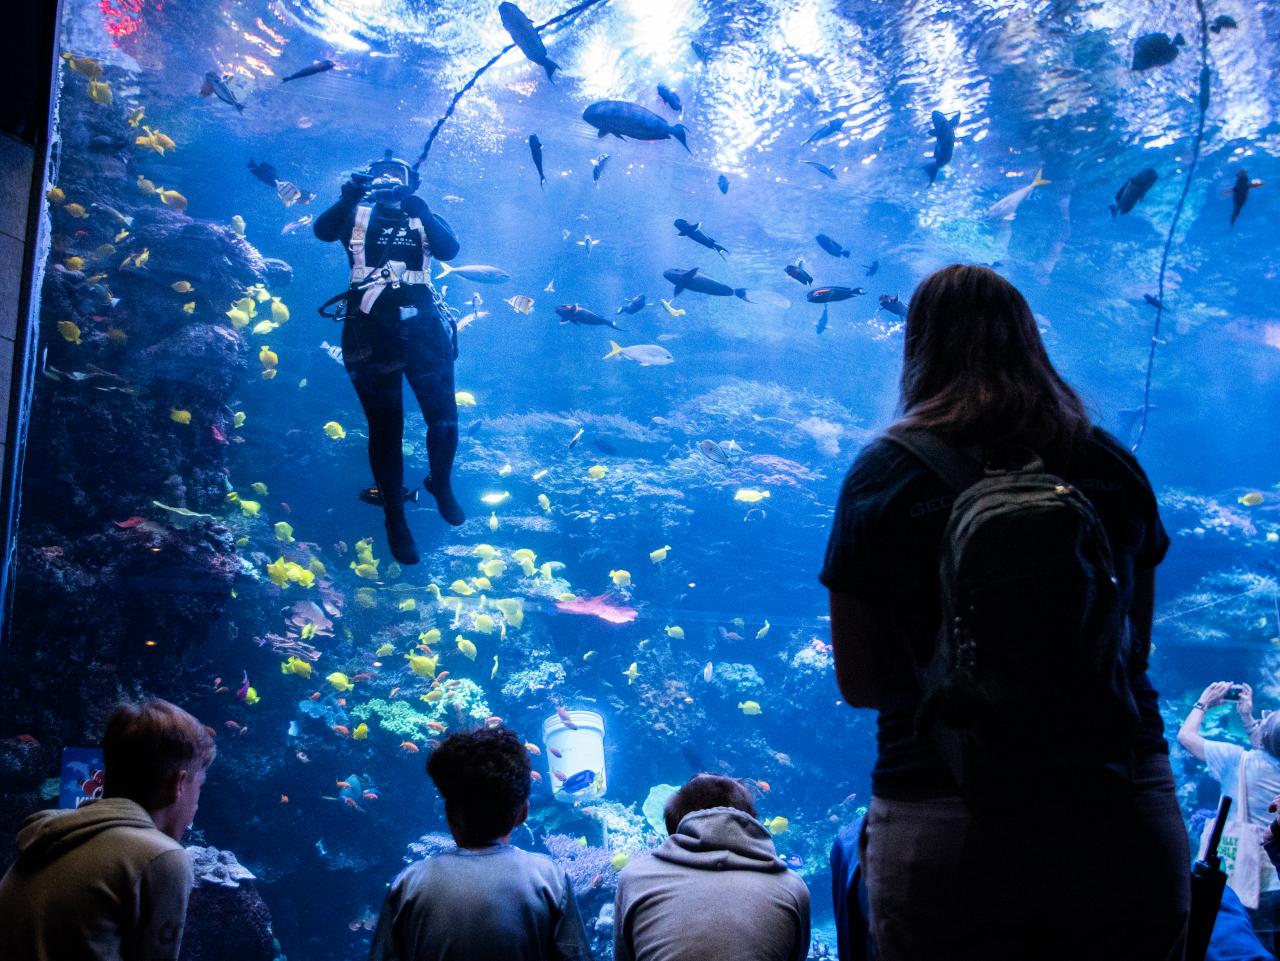 Photos of Divers Cleaning Aquarium Tanks, Nature and Wildlife